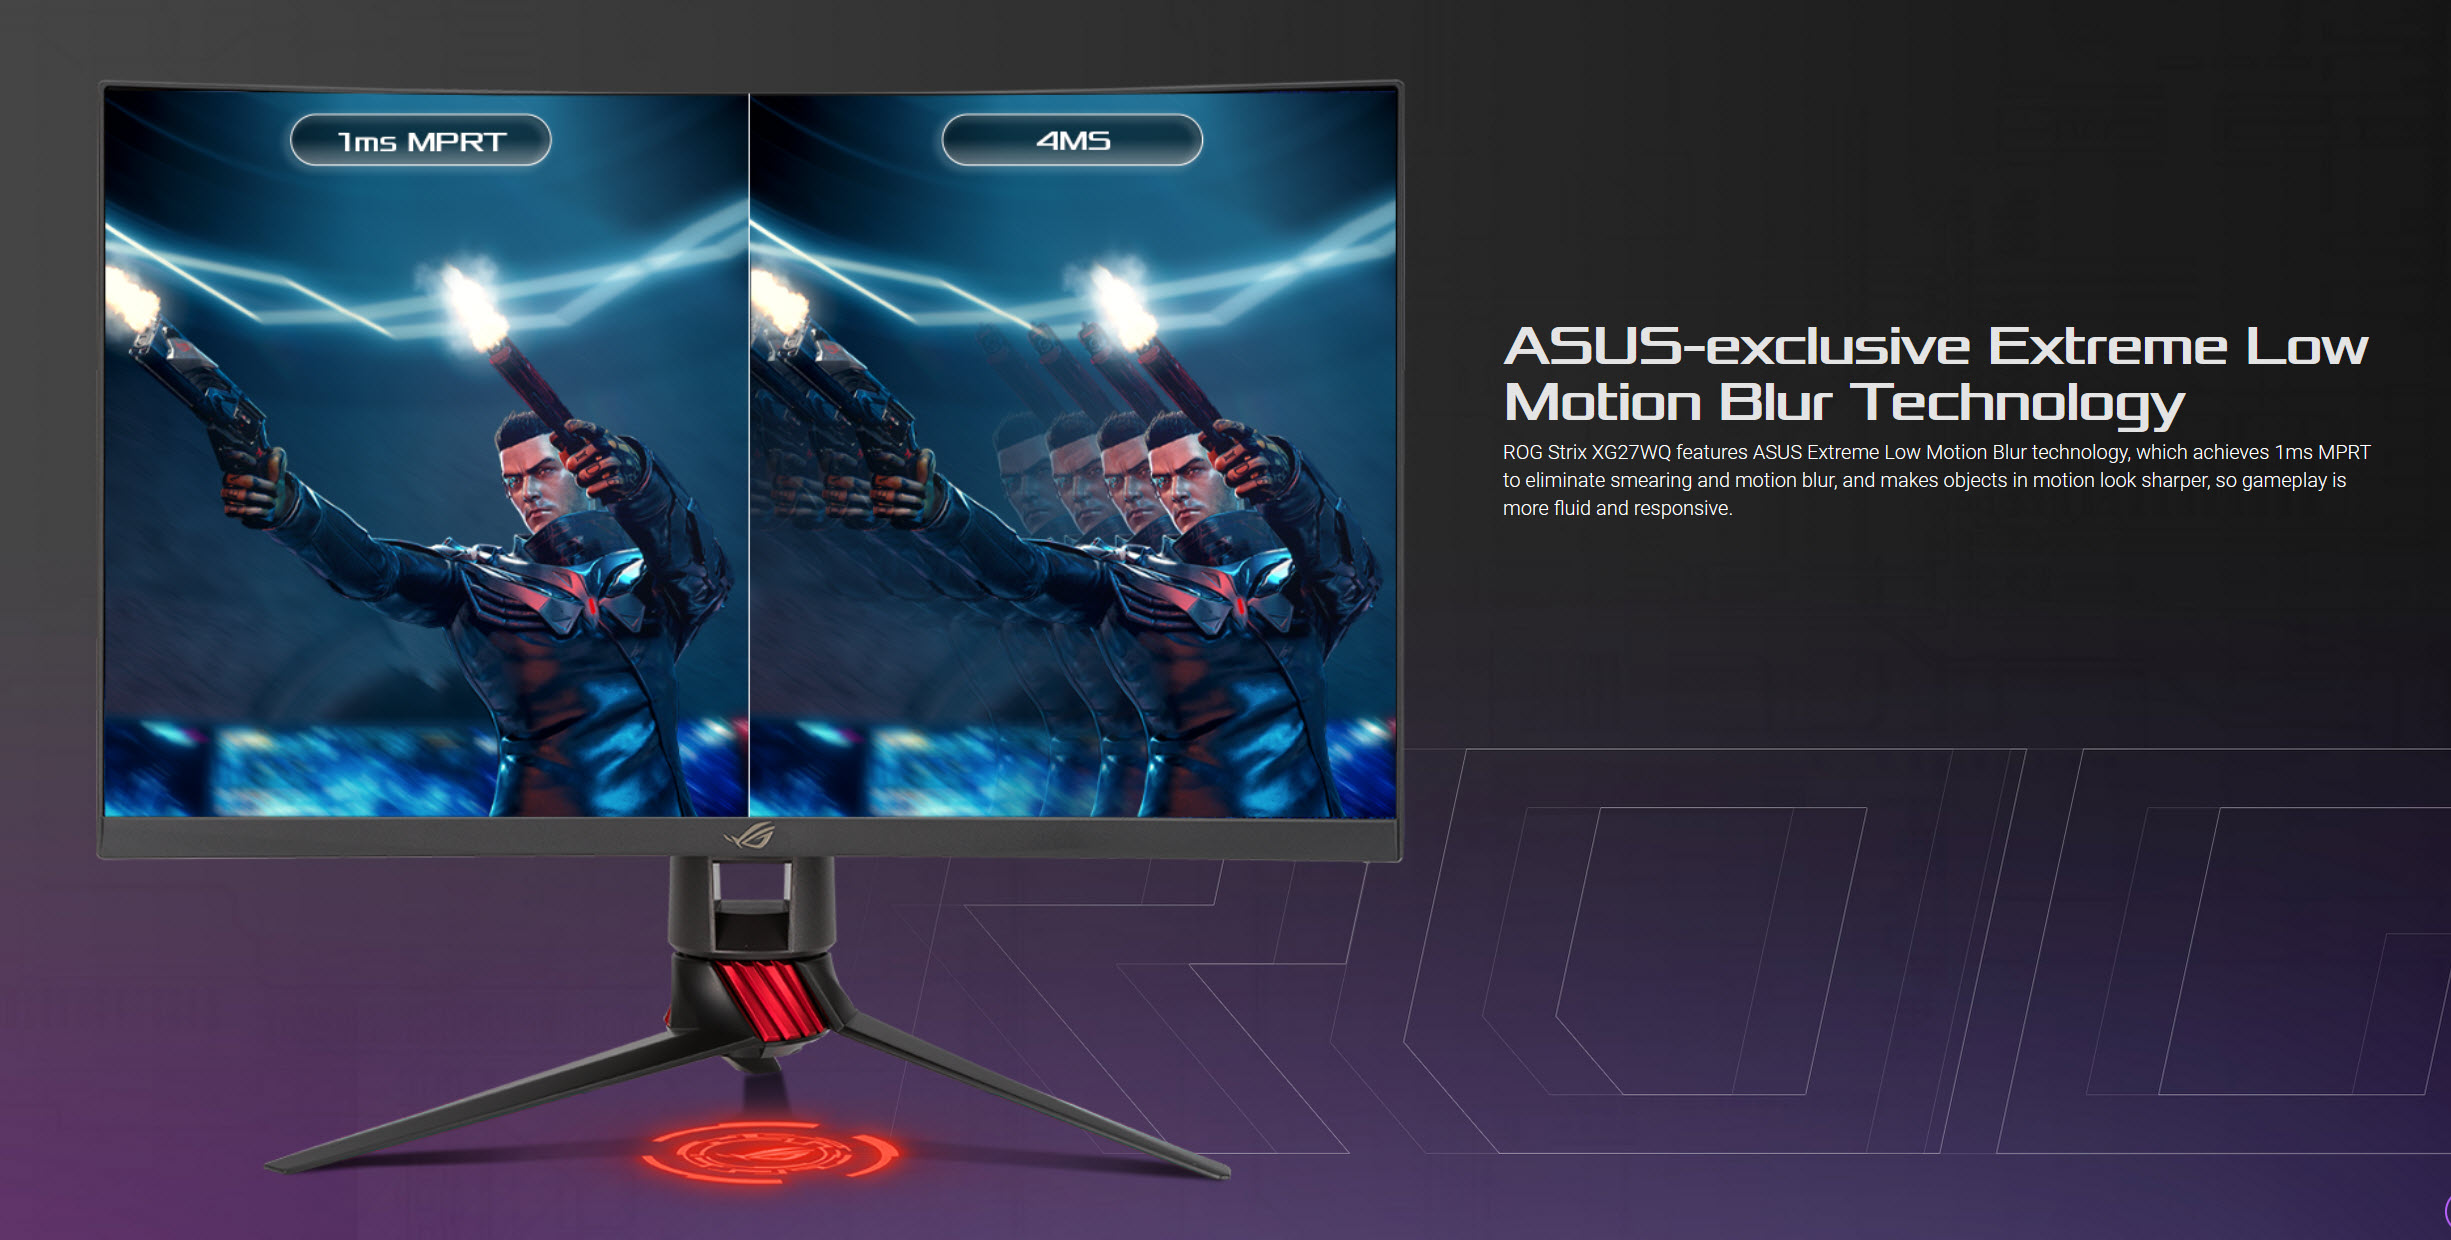 2020 04 01 15 28 54 เอซุสเปิดตัวจอเกมส์มิ่ง ASUS ROG Strix XG27WQ WQHD Curved Gaming Monitor 165Hz/HDR รุ่นใหม่ล่าสุดที่มาพร้อมเทคโนโลยีใหม่อย่าง ASUS exclusive Extreme Low Motion Blur Technology เพื่อคอเกมส์มิ่งตัวจริง!! 